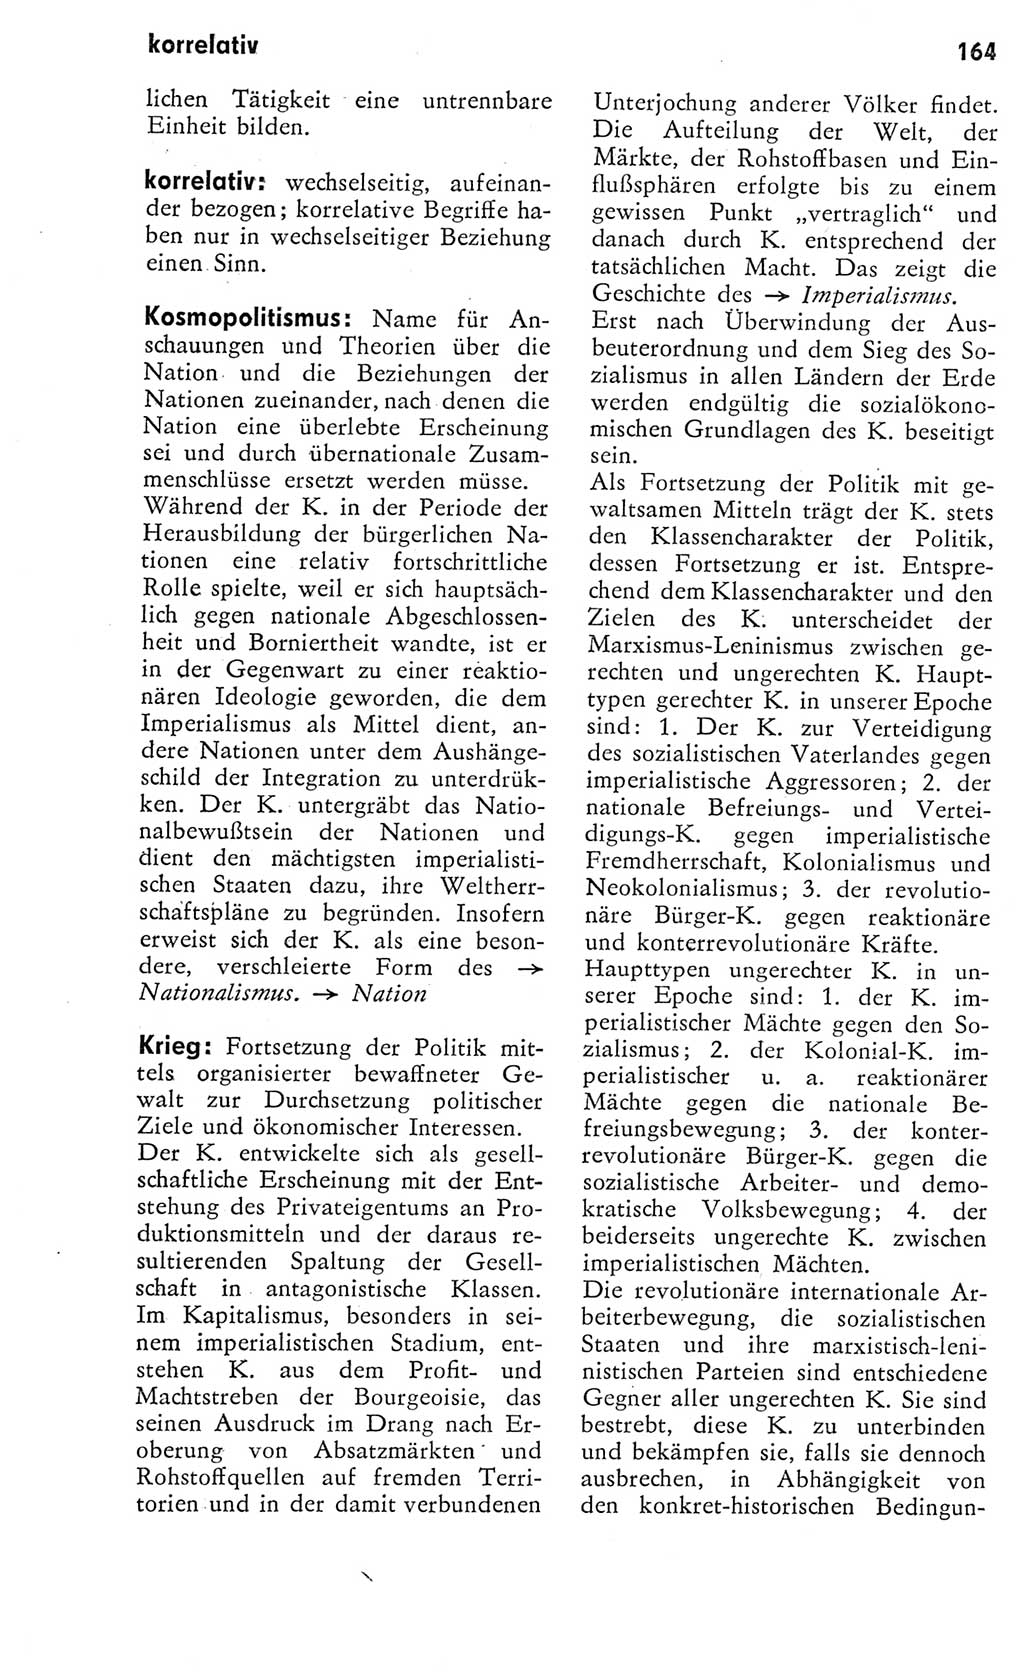 Kleines Wörterbuch der marxistisch-leninistischen Philosophie [Deutsche Demokratische Republik (DDR)] 1975, Seite 164 (Kl. Wb. ML Phil. DDR 1975, S. 164)